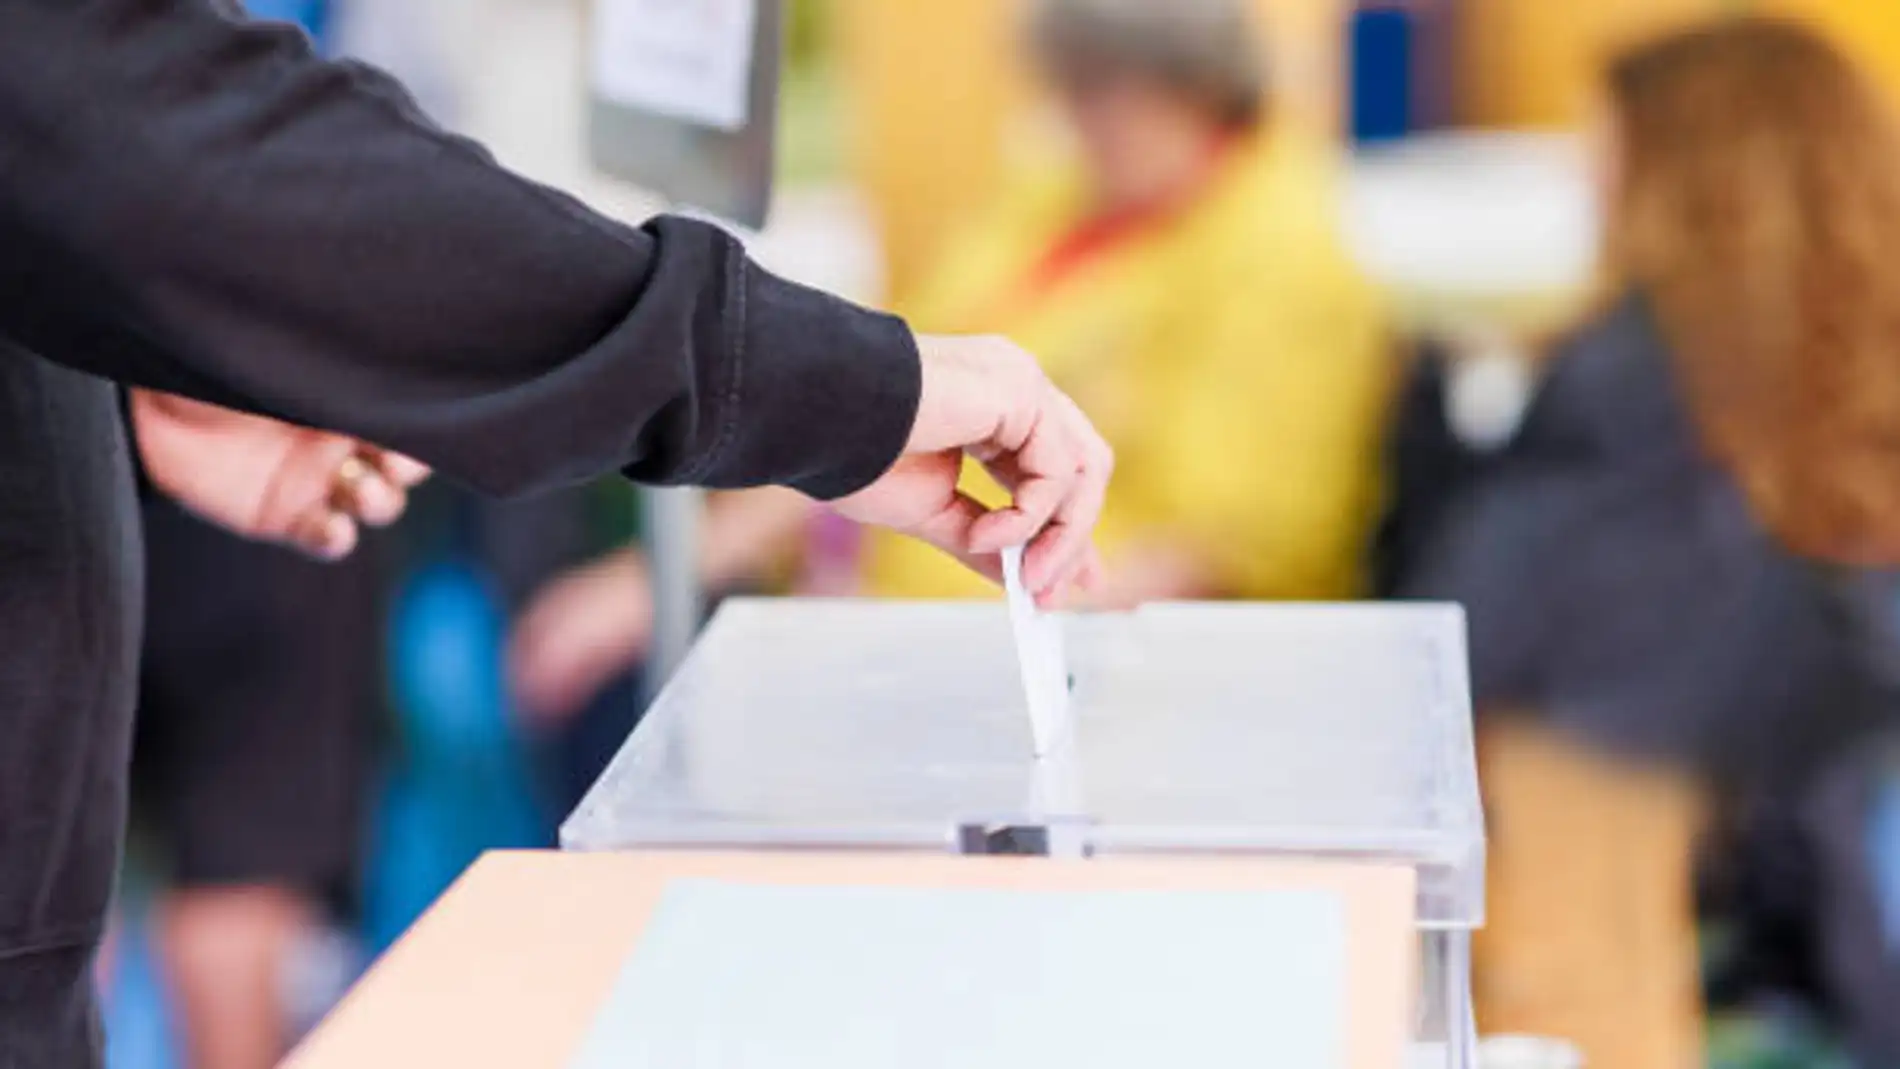 Mano depositando voto en urna